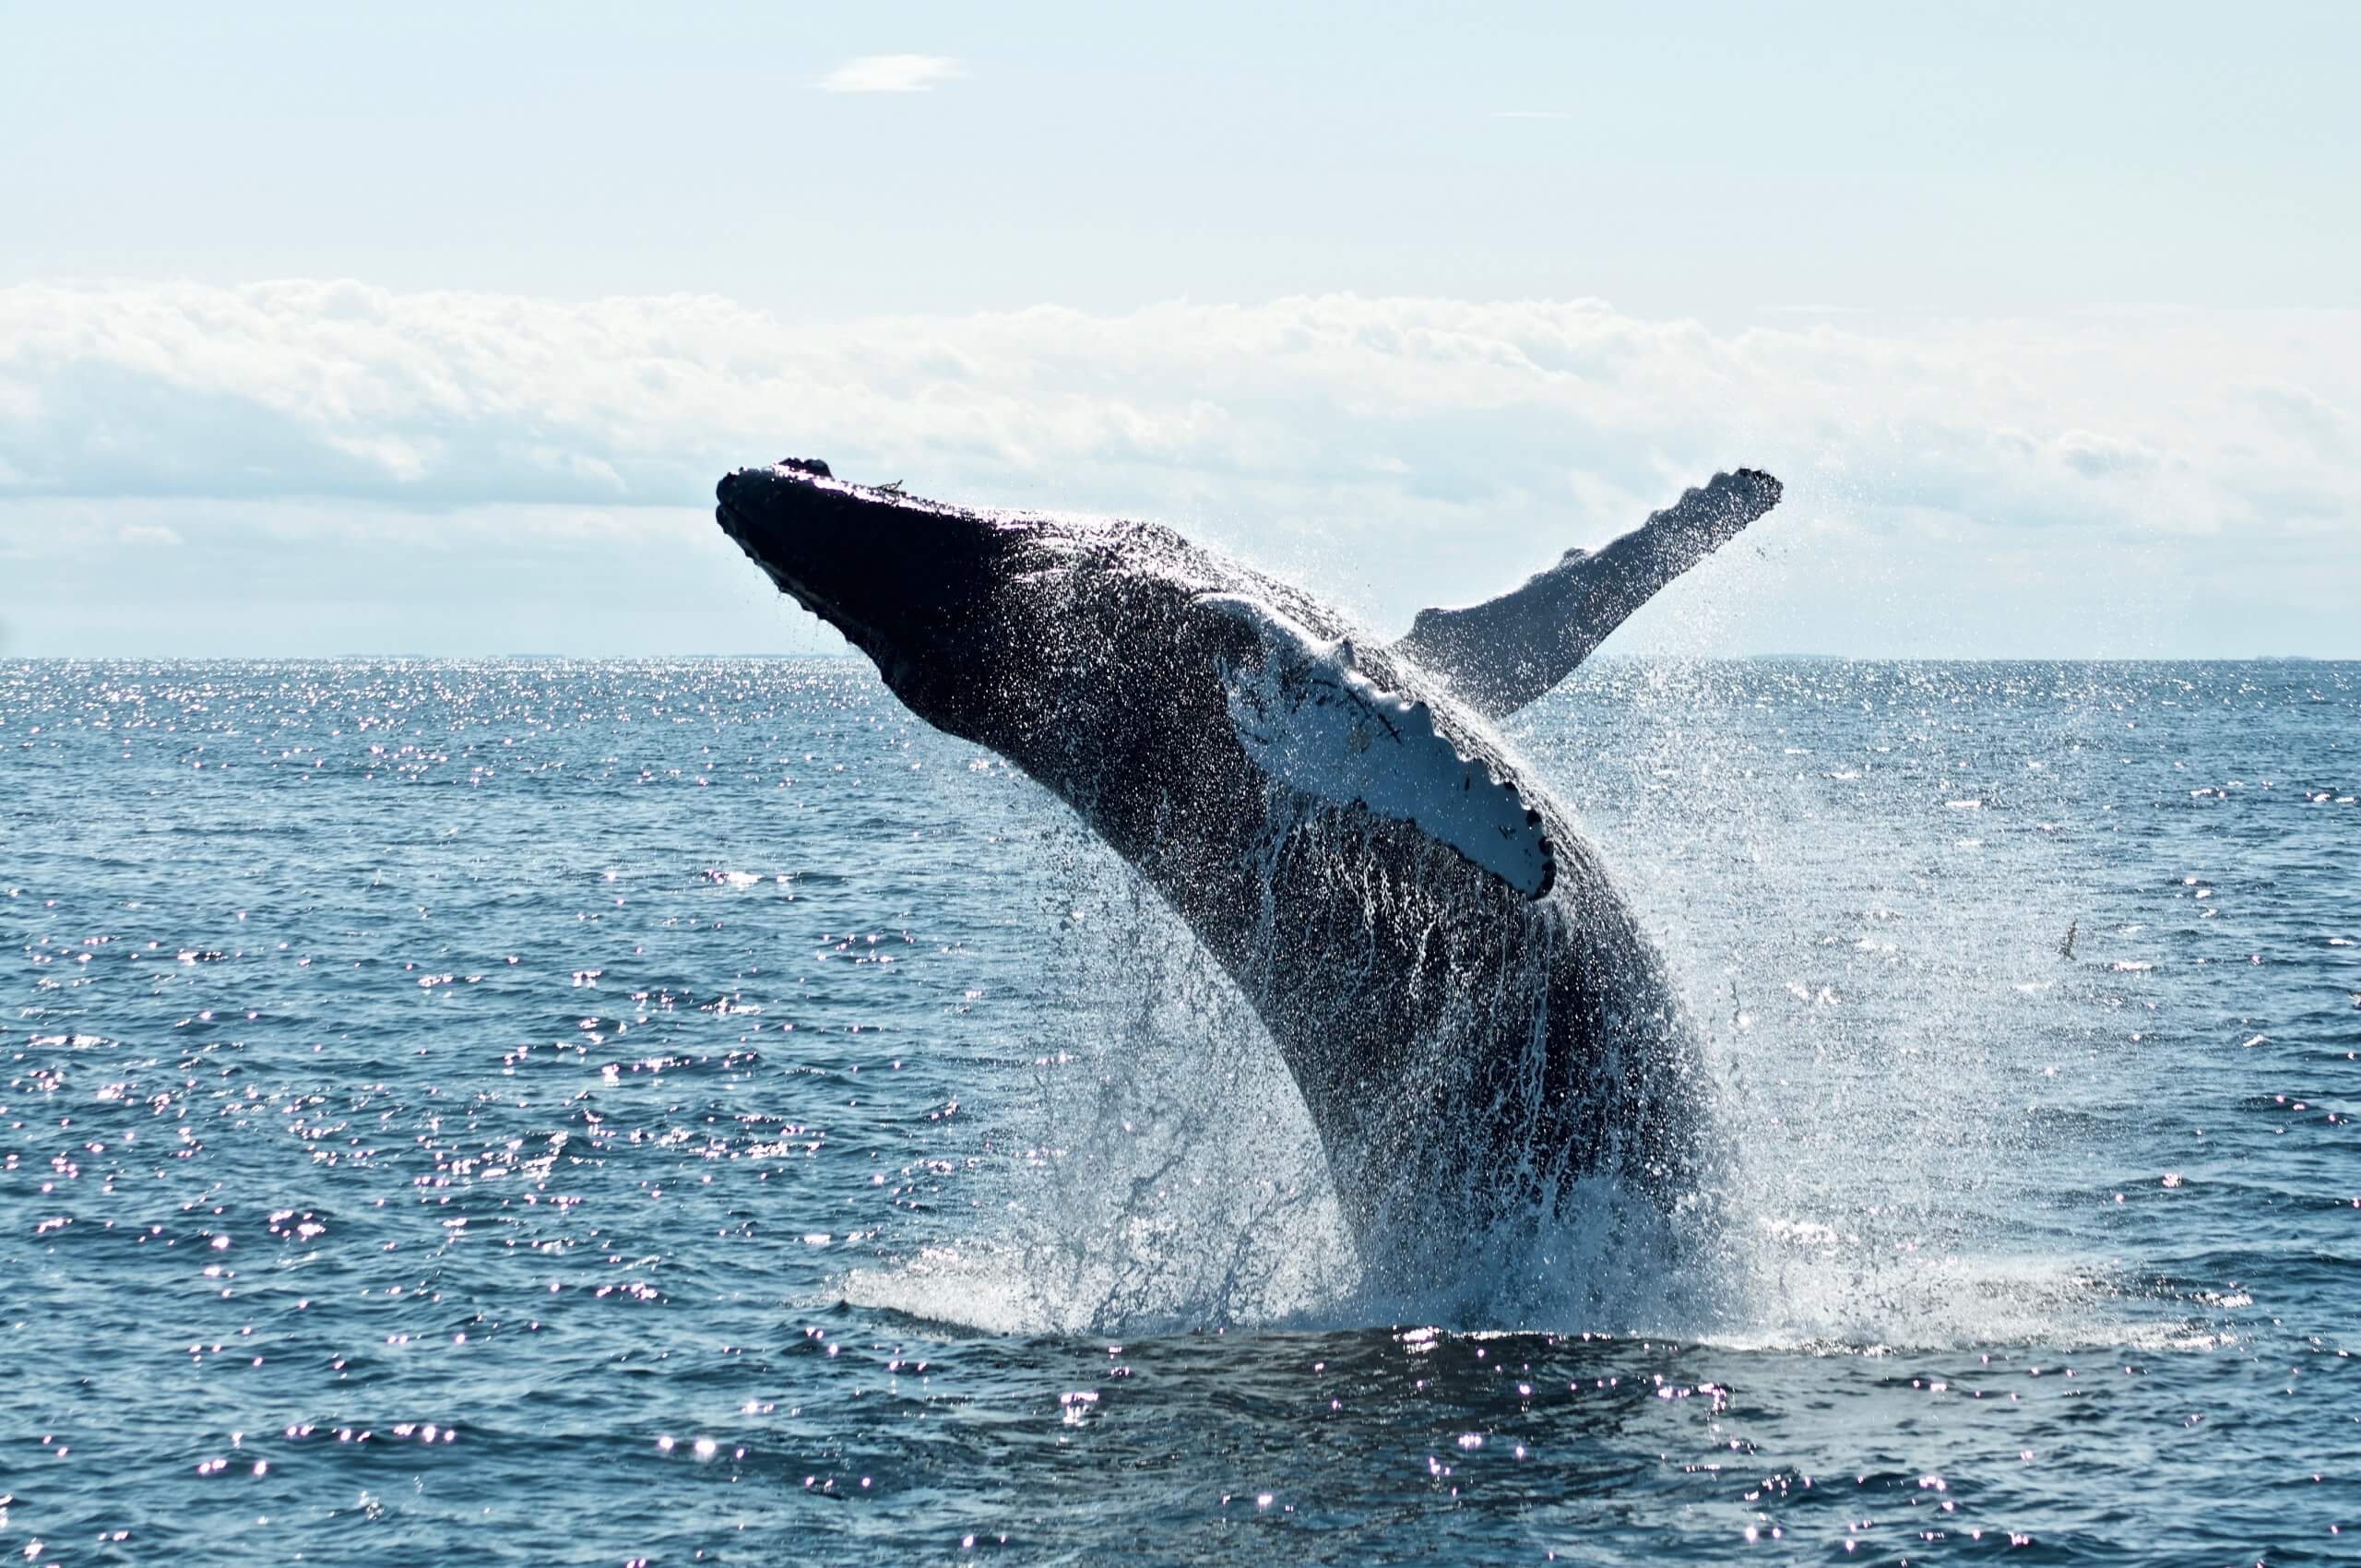 وتنضم الدراسة الجديدة إلى سلسلة من الدراسات التي تشير إلى أن الحيتان مهمة بالنسبة لنا - حتى أكثر مما كنا نعتقد. لكن هل نحميهم بما فيه الكفاية؟ تصوير تود كرافينز على Unsplash